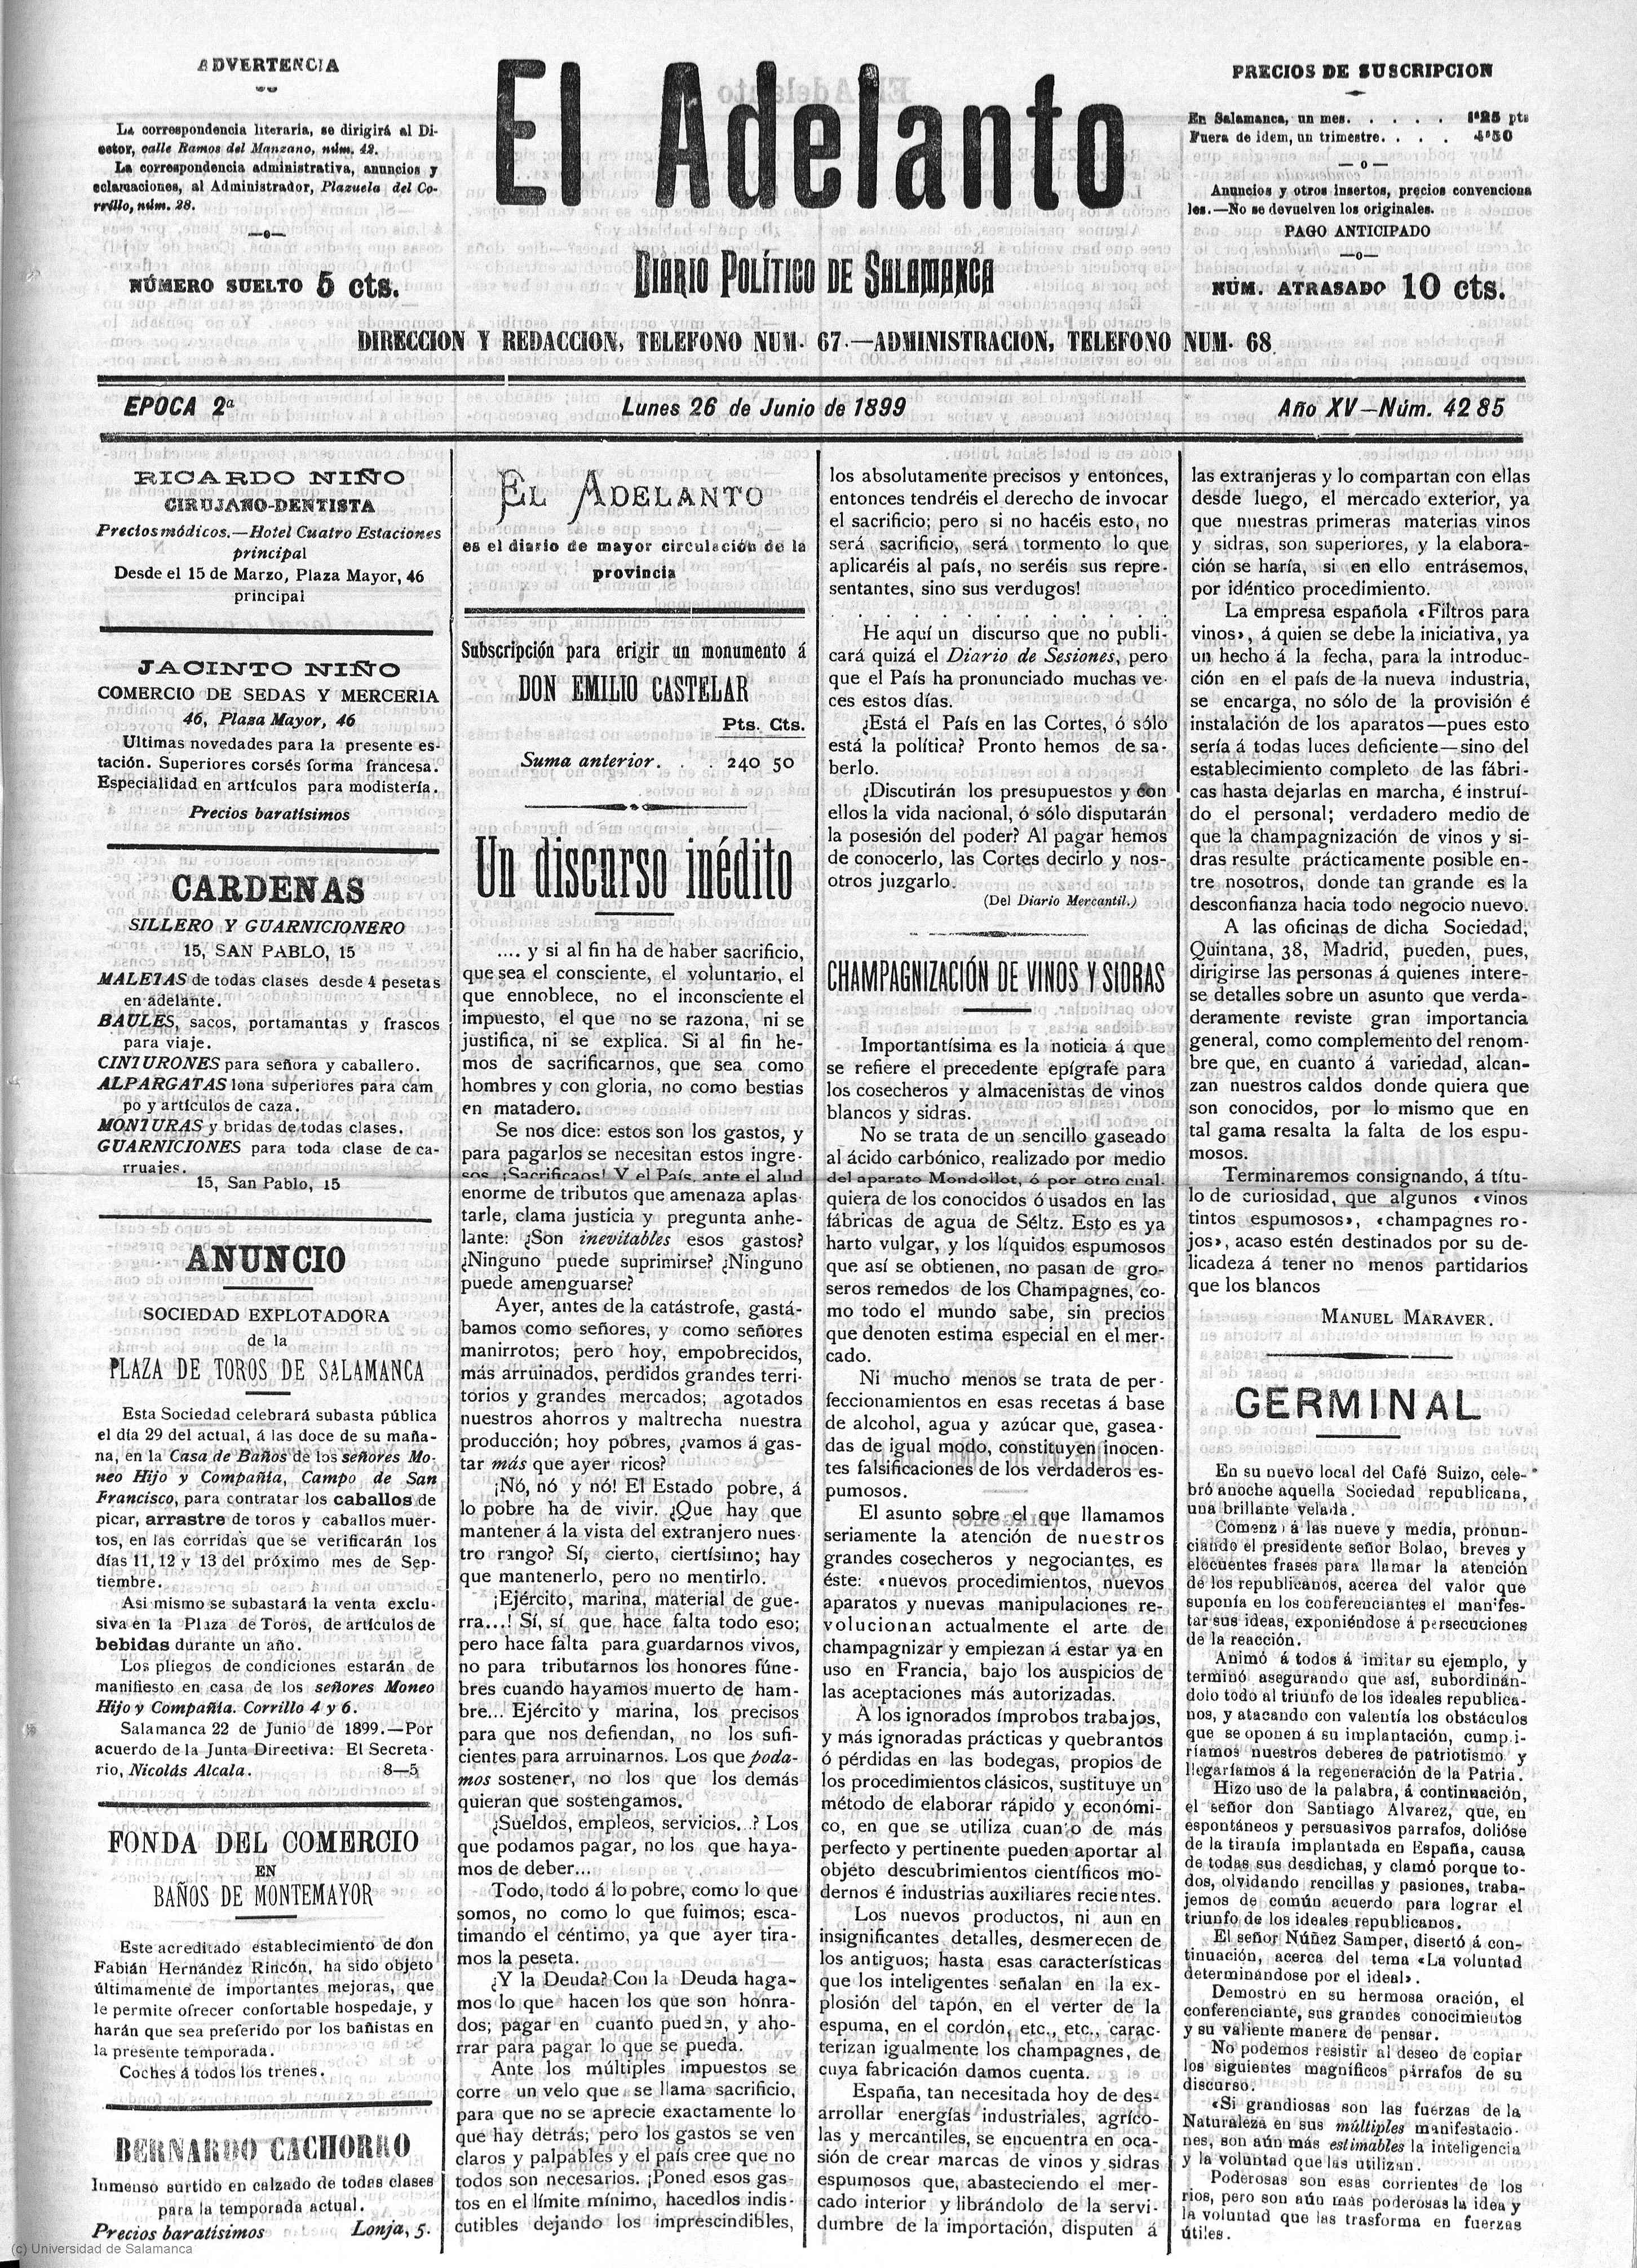 Biblioteca Virtual de Prensa Histórica > Bilaketa › 'El Adelanto : Diario  político de Salamanca' - Epoca 2.ª...